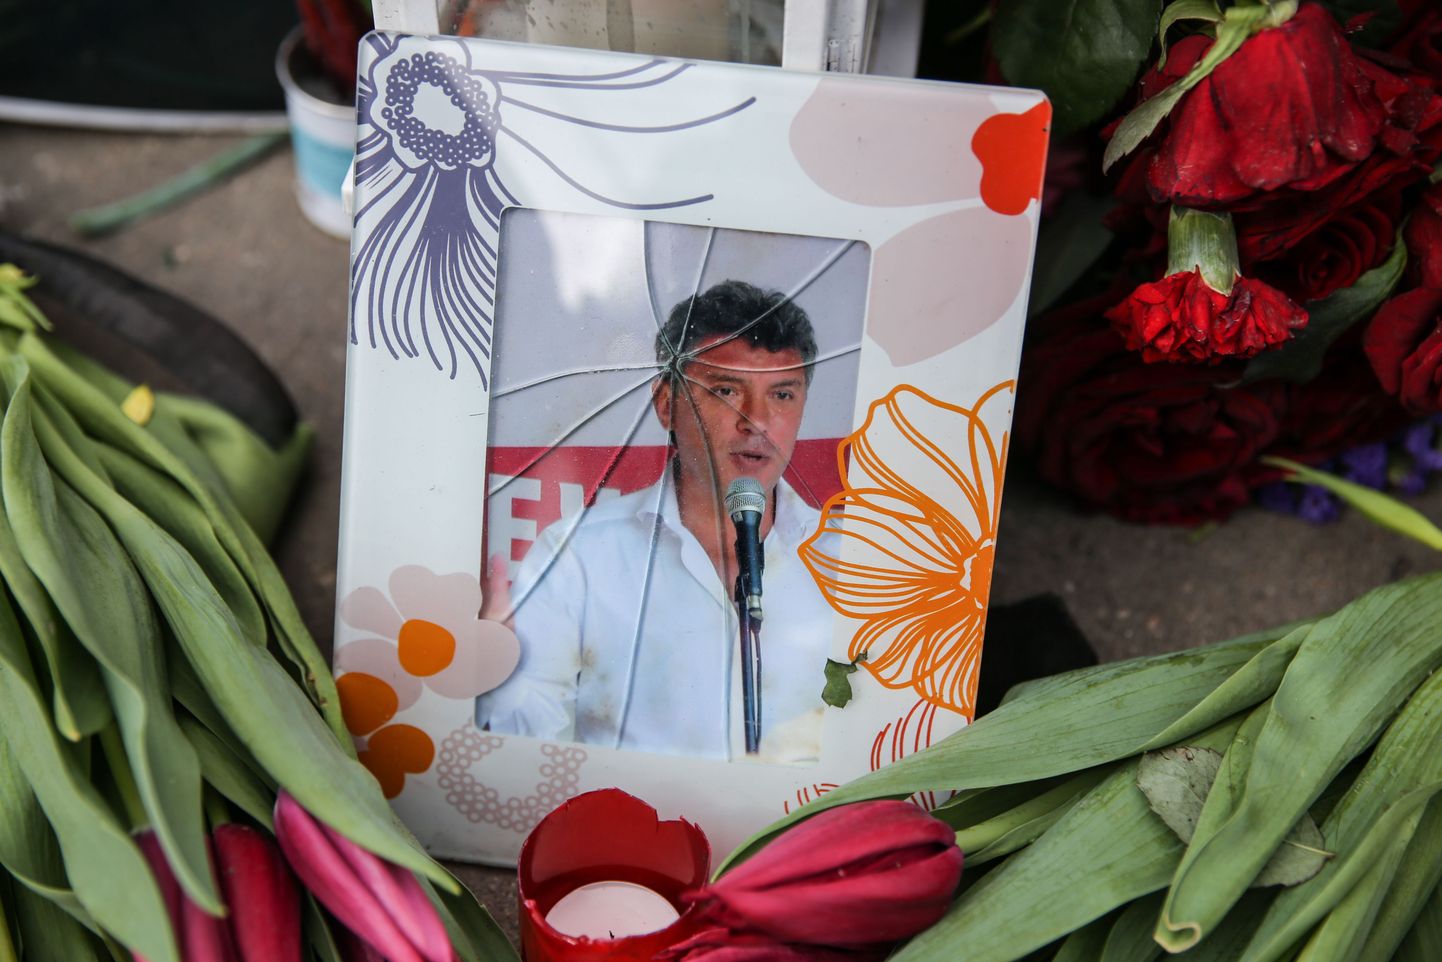 Сотрудники столичных коммунальных служб перенесли с места убийства оппозиционного политика Бориса Немцова на Большом Москворецком мосту все цветы и фотографии.